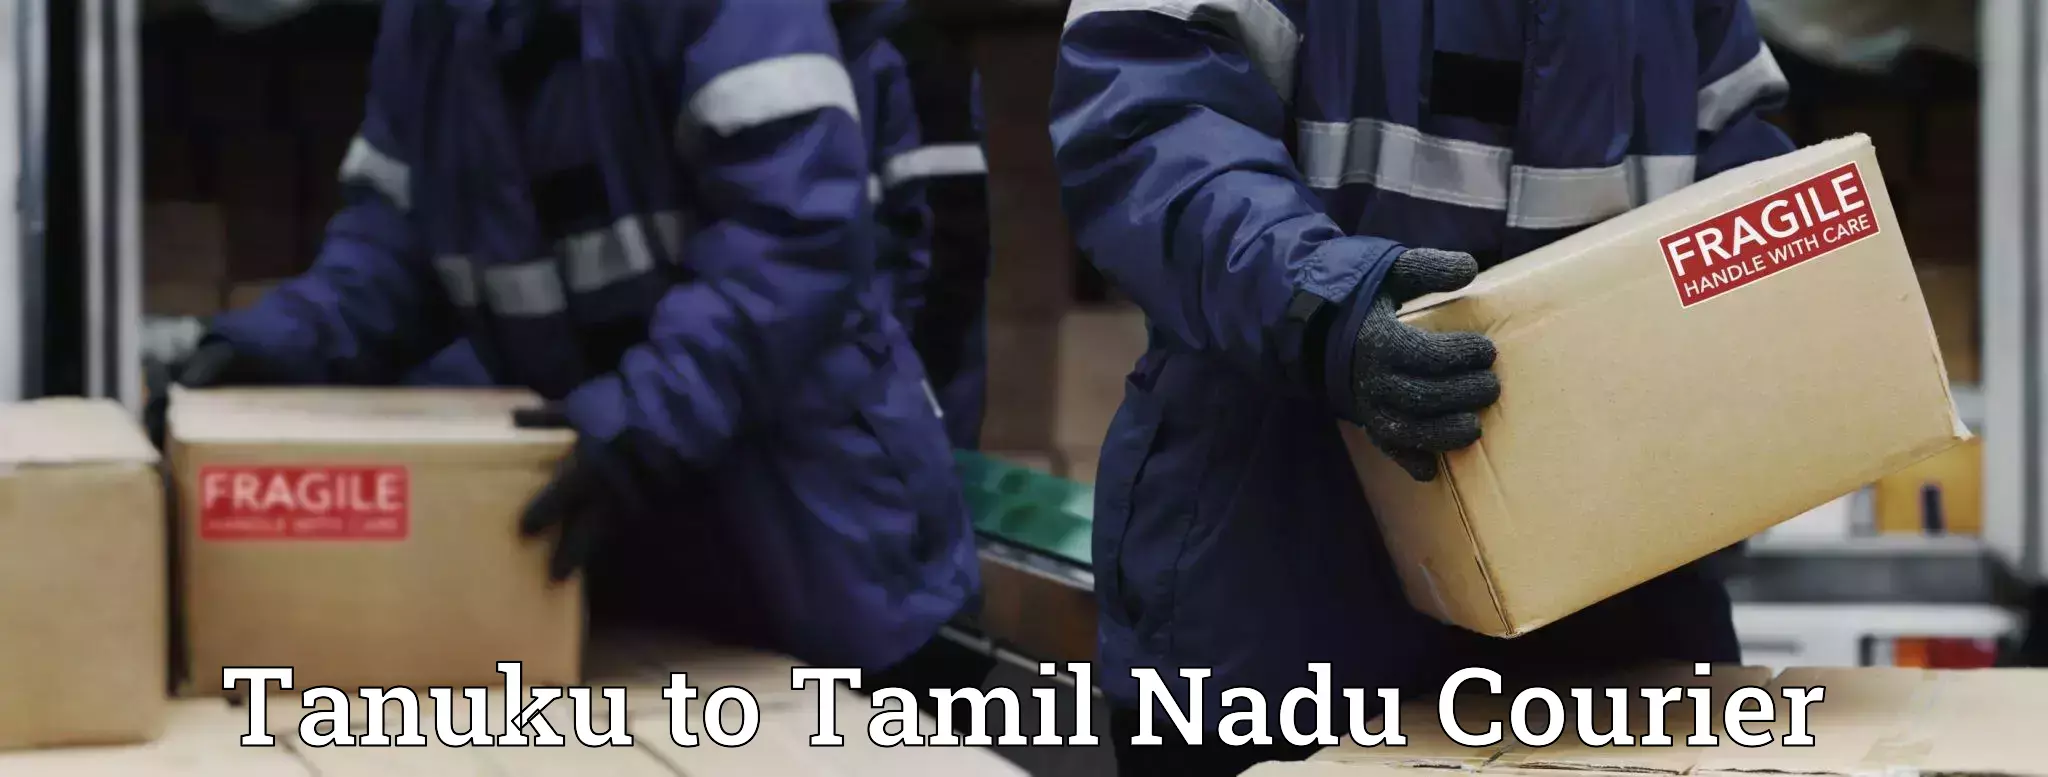 Fragile item shipping Tanuku to Tamil Nadu